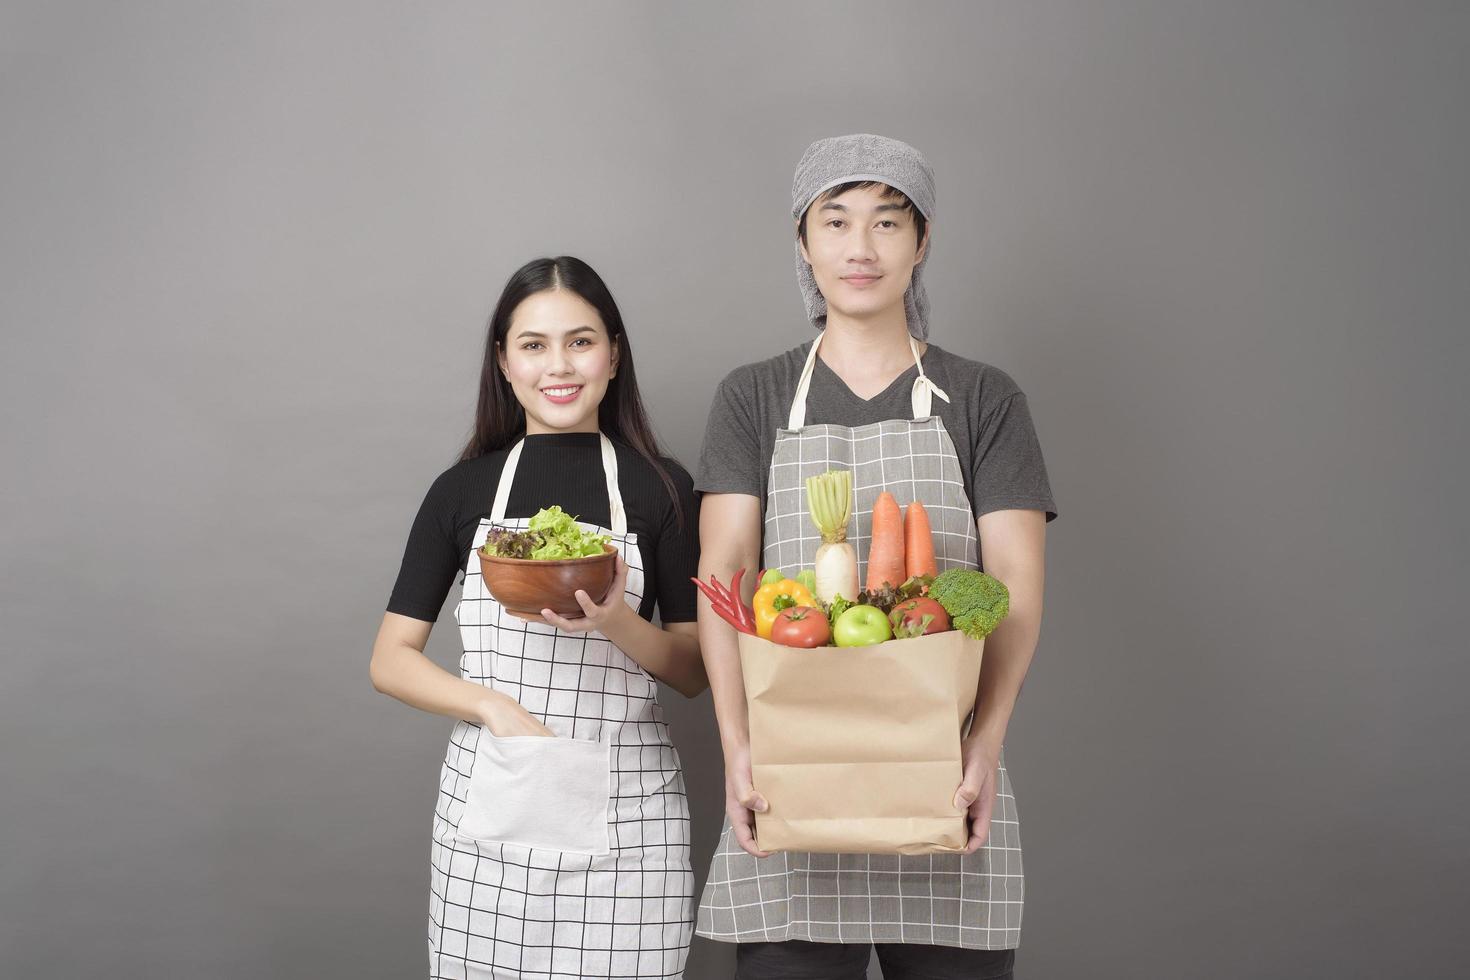 coppia felice sta tenendo le verdure nel sacchetto della spesa in studio sfondo grigio foto